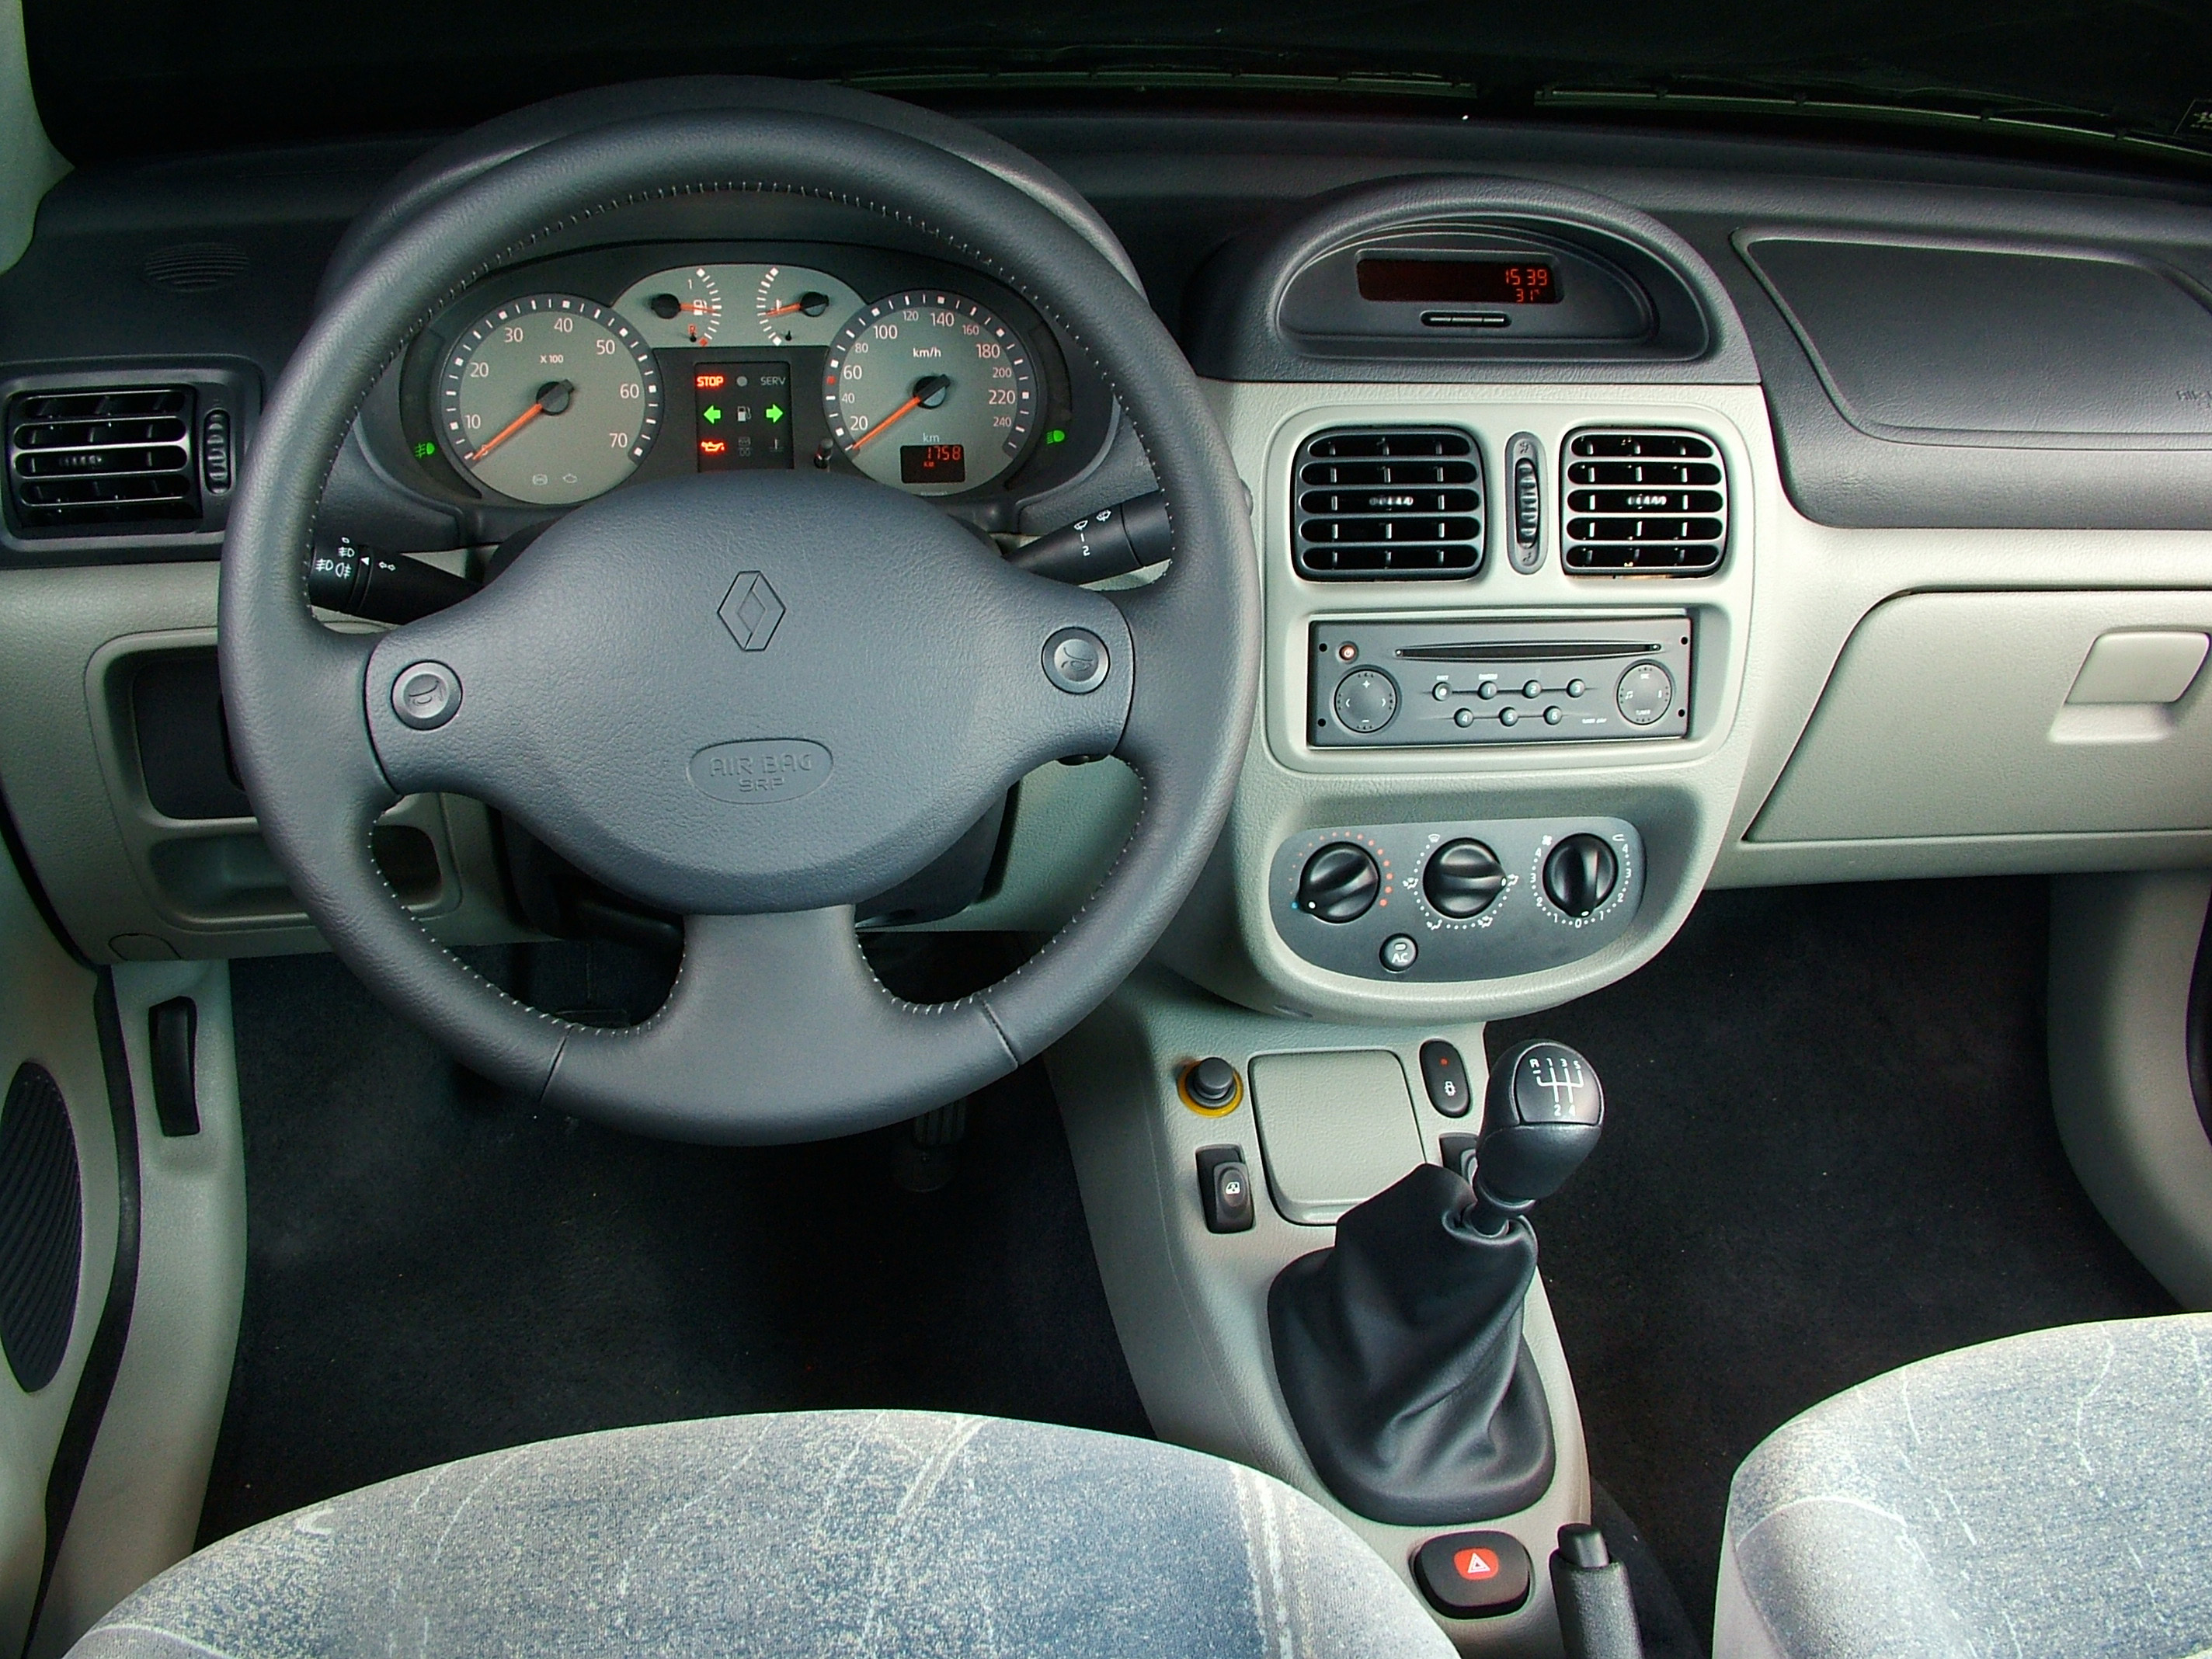 Painel do Clio Hatch 1.6 16V Hiflex Privilège, modelo 2005, da Renault, testado pela revista Quatro Rodas.